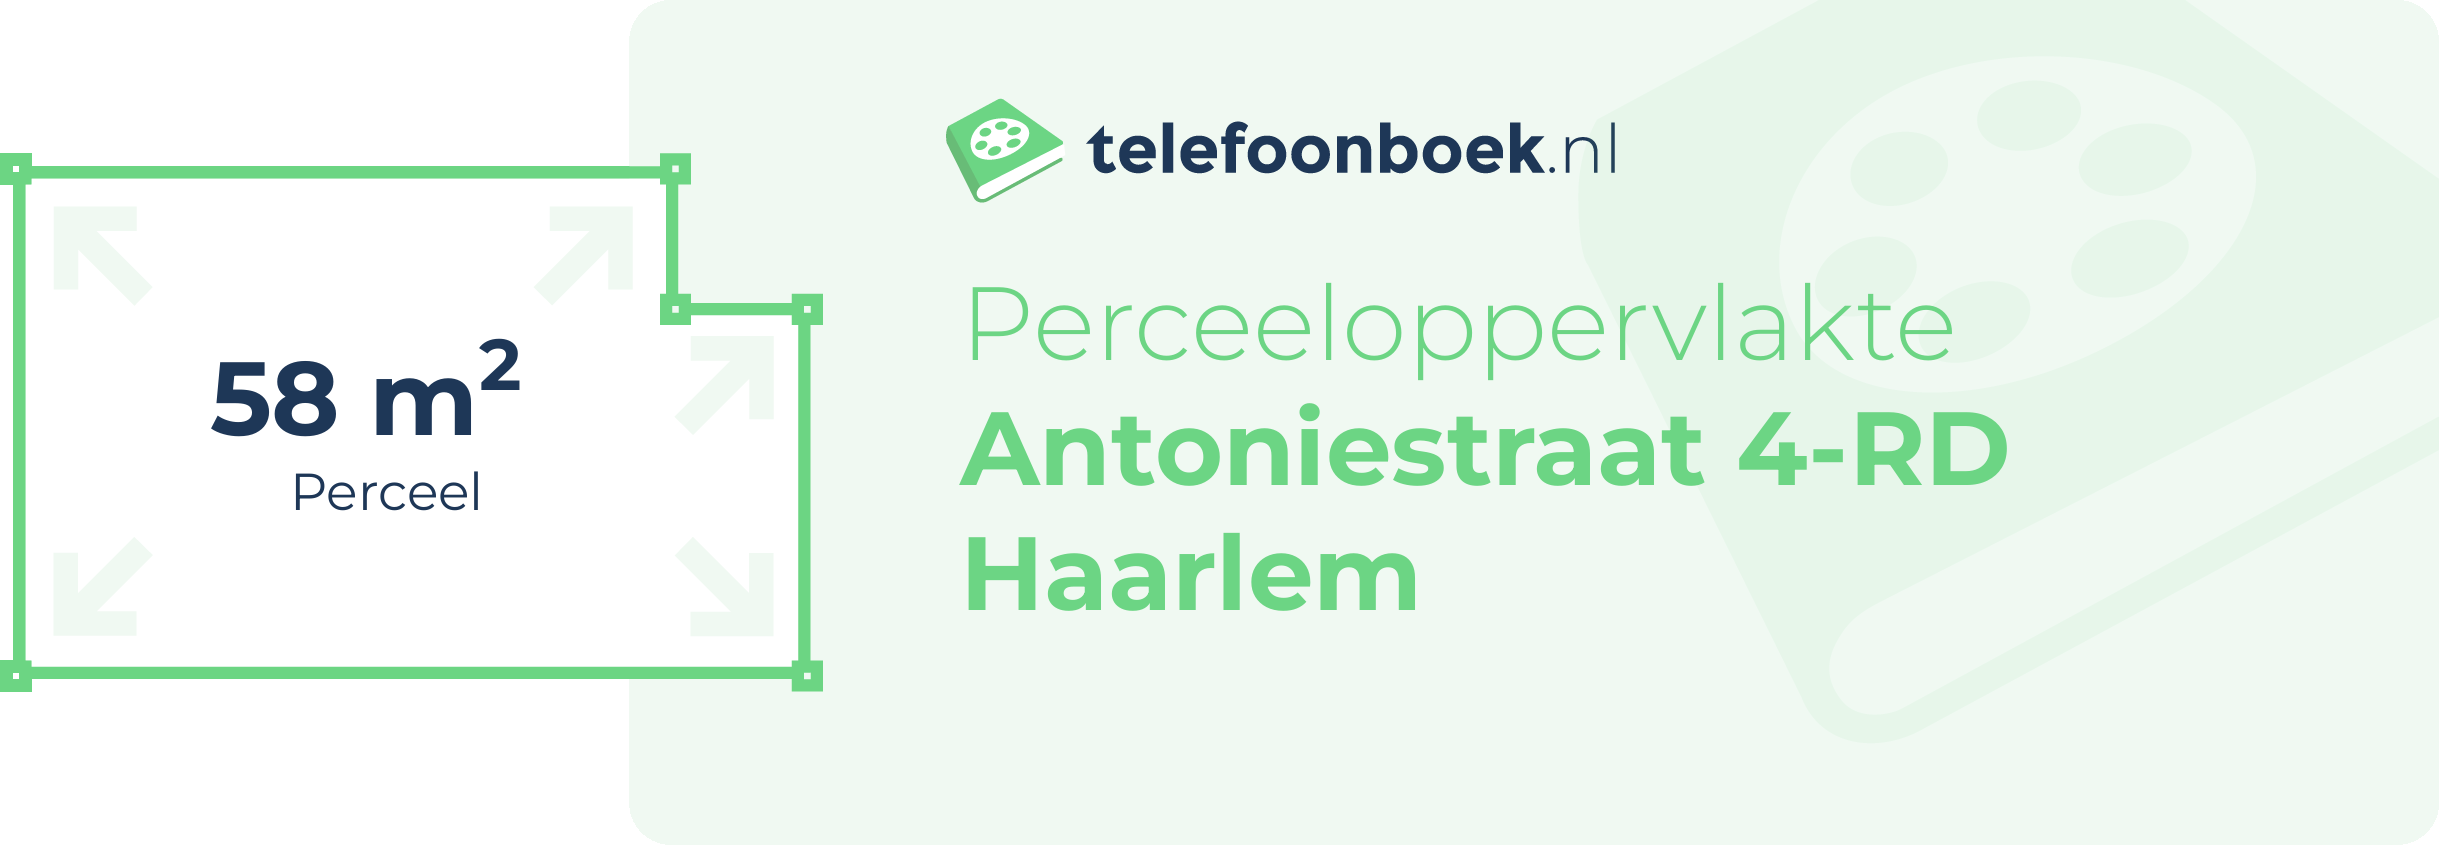 Perceeloppervlakte Antoniestraat 4-RD Haarlem